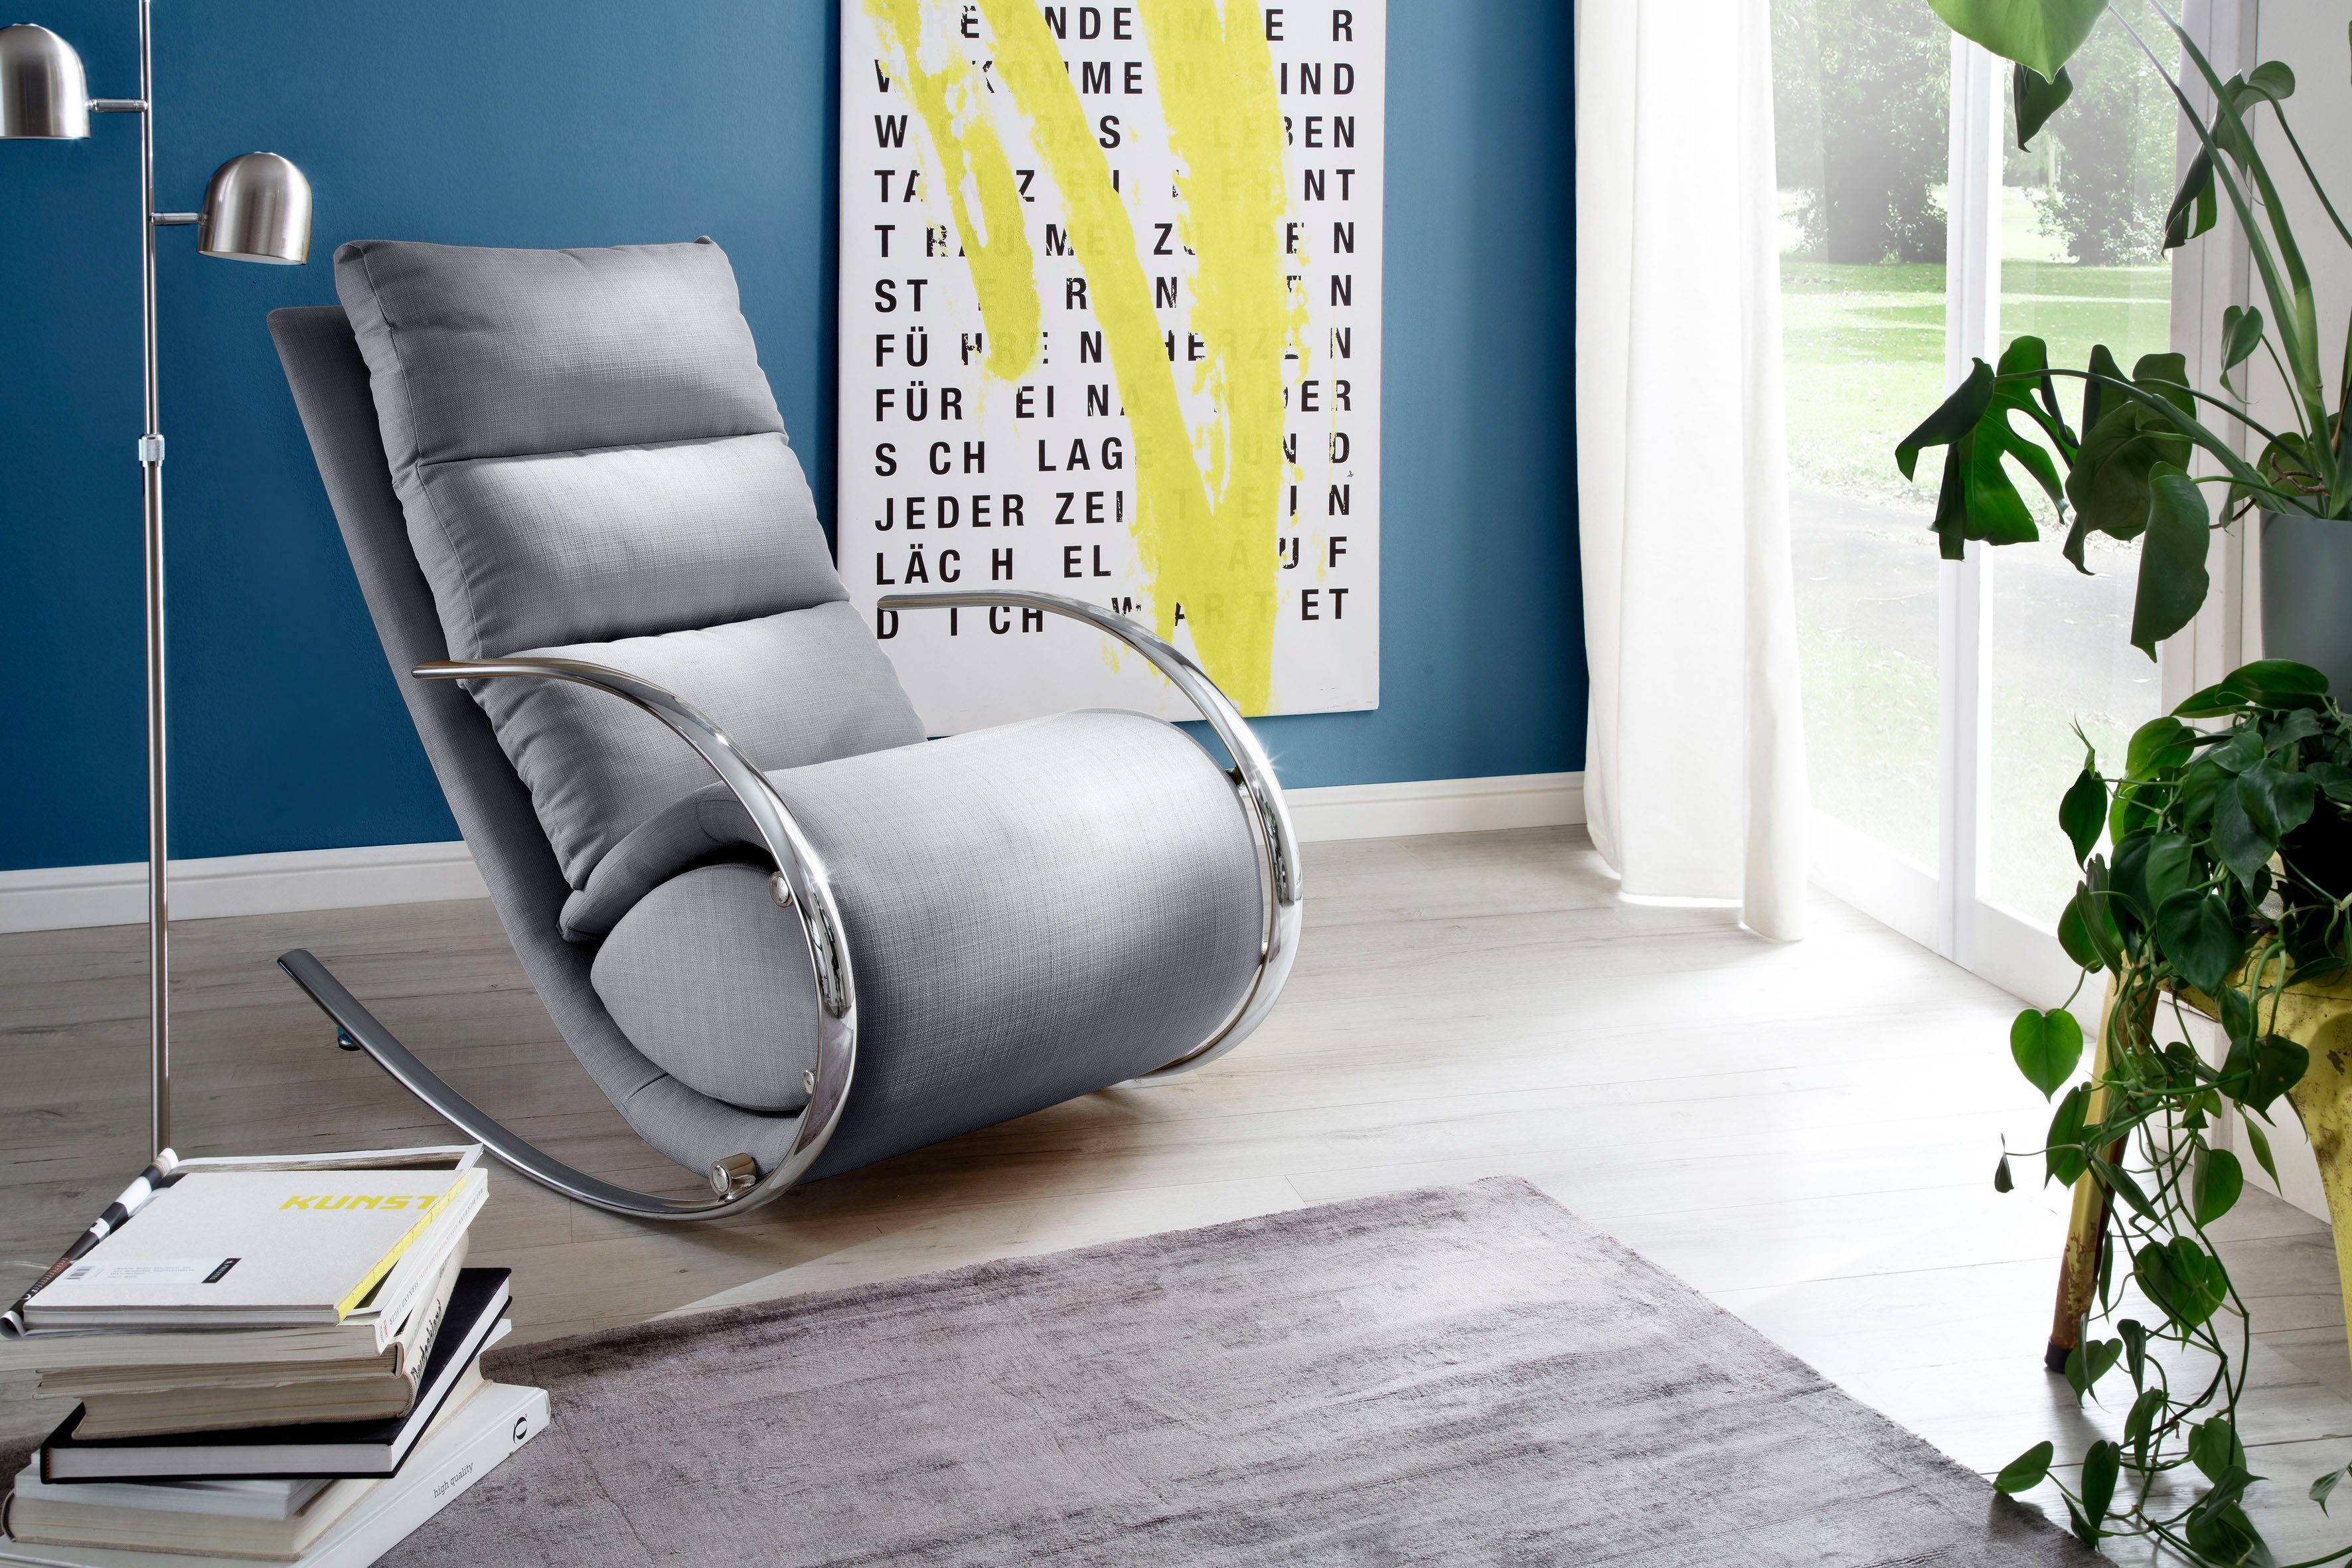 Manie Voorschrift Slechthorend MCA furniture Relaxfauteuil York Relaxfauteuil met hocker, belastbaar tot  100 kg in de online shop | OTTO